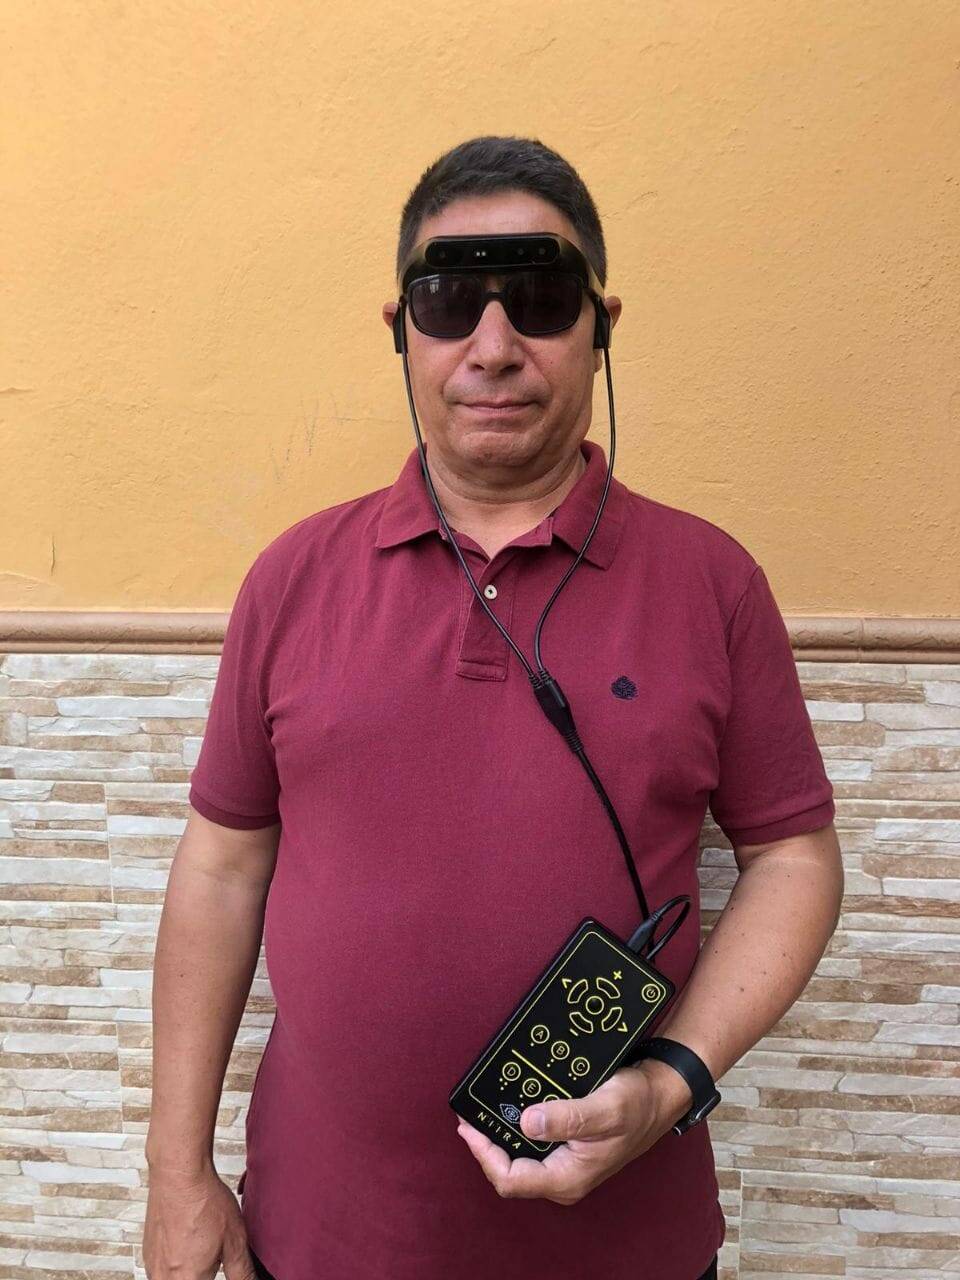 El valenciano Domingo Bonet, de Enguera, con las gafas de Eyesynth.